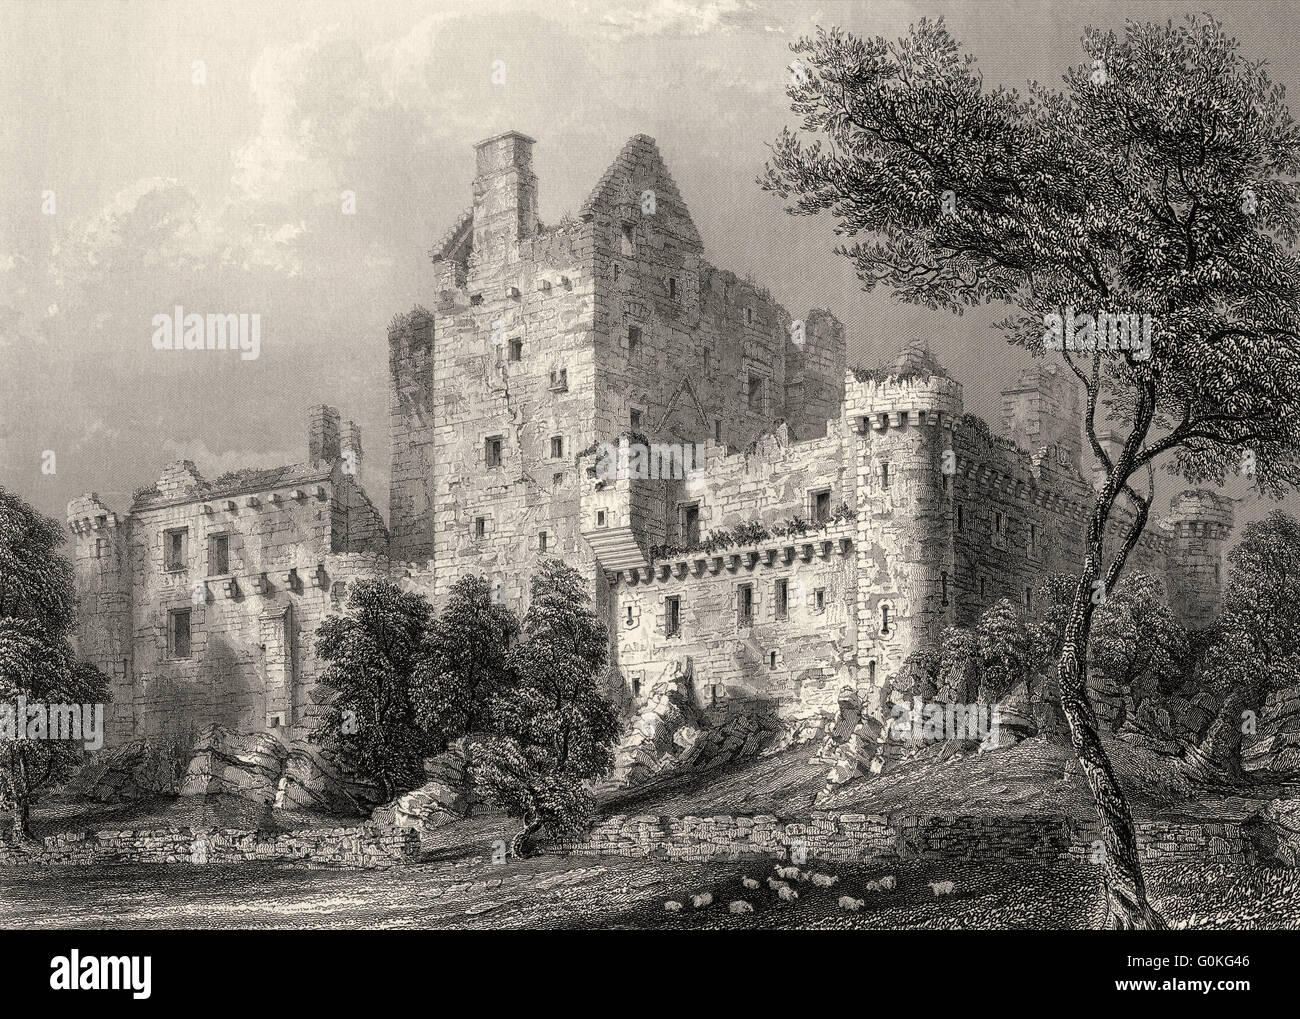 Craigmillar Castle, a ruined medieval castle in Edinburgh, Scotland Stock Photo